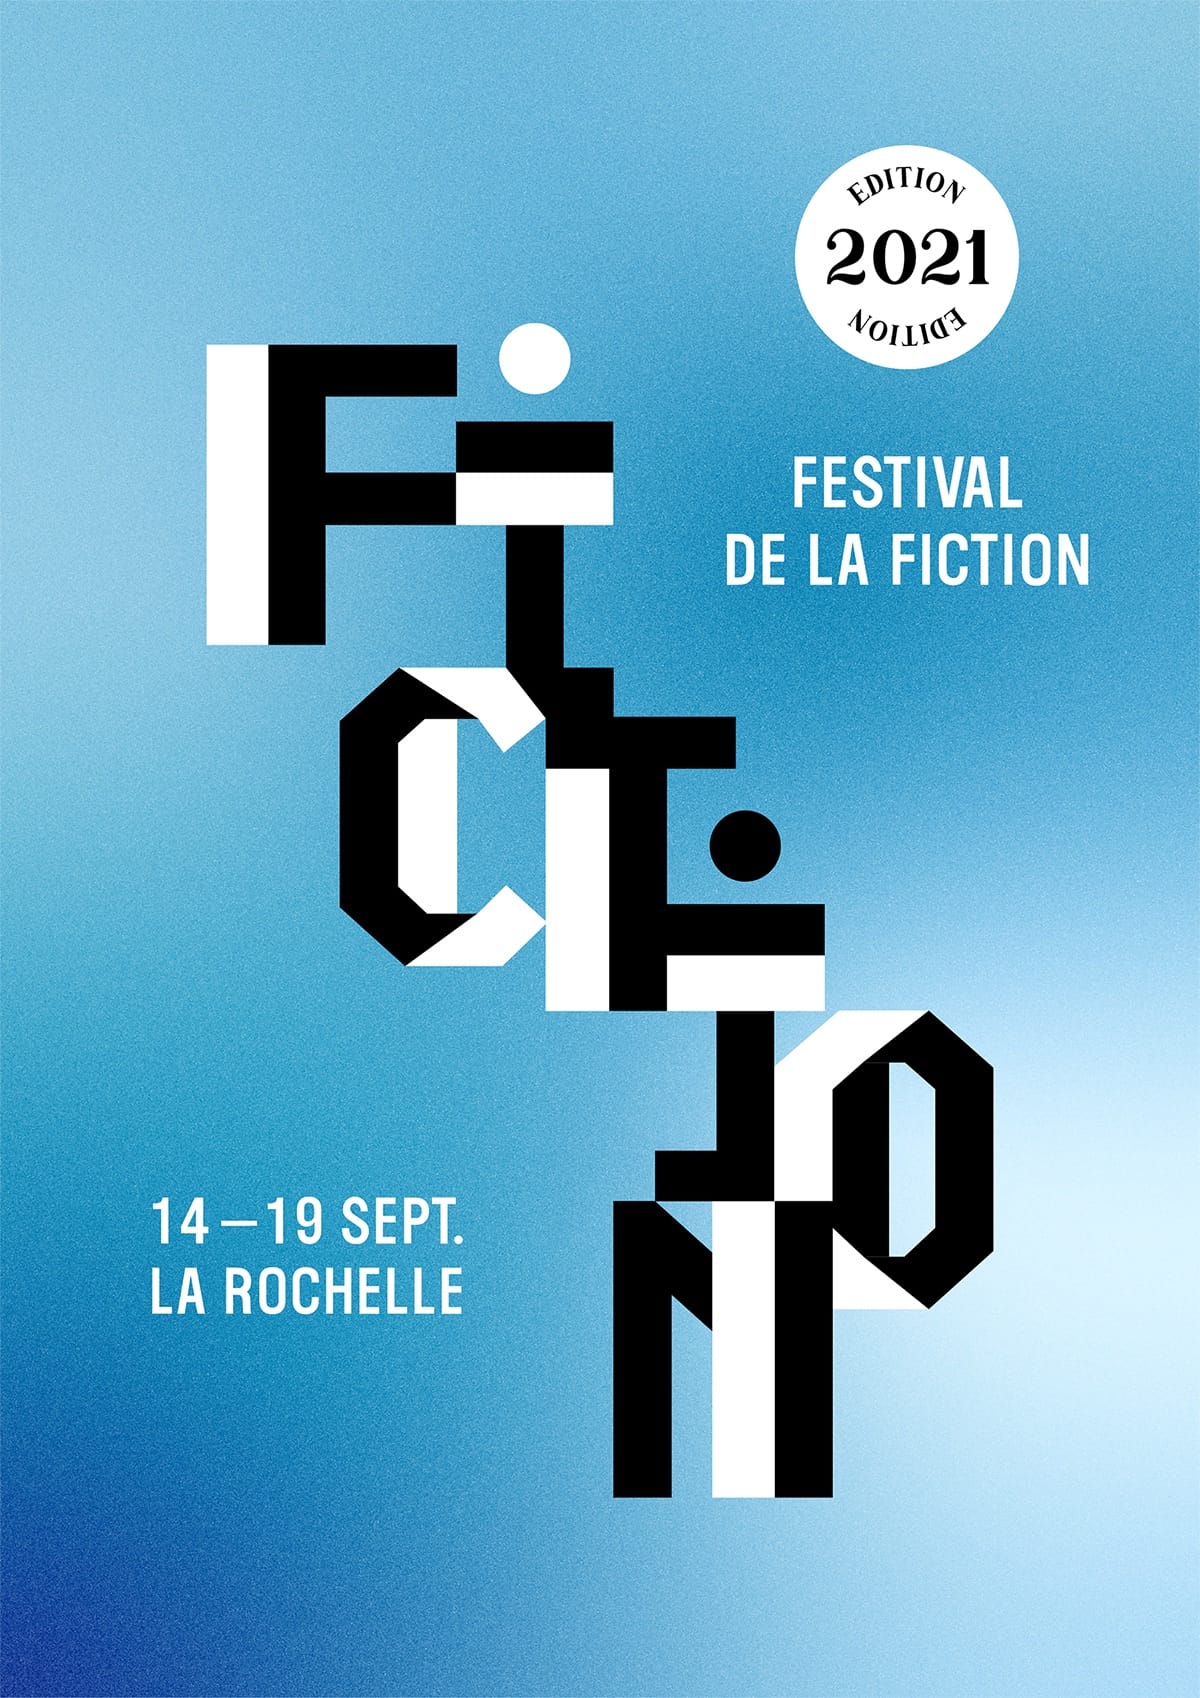 Festival de la Fiction 2021 affiche fictions tv